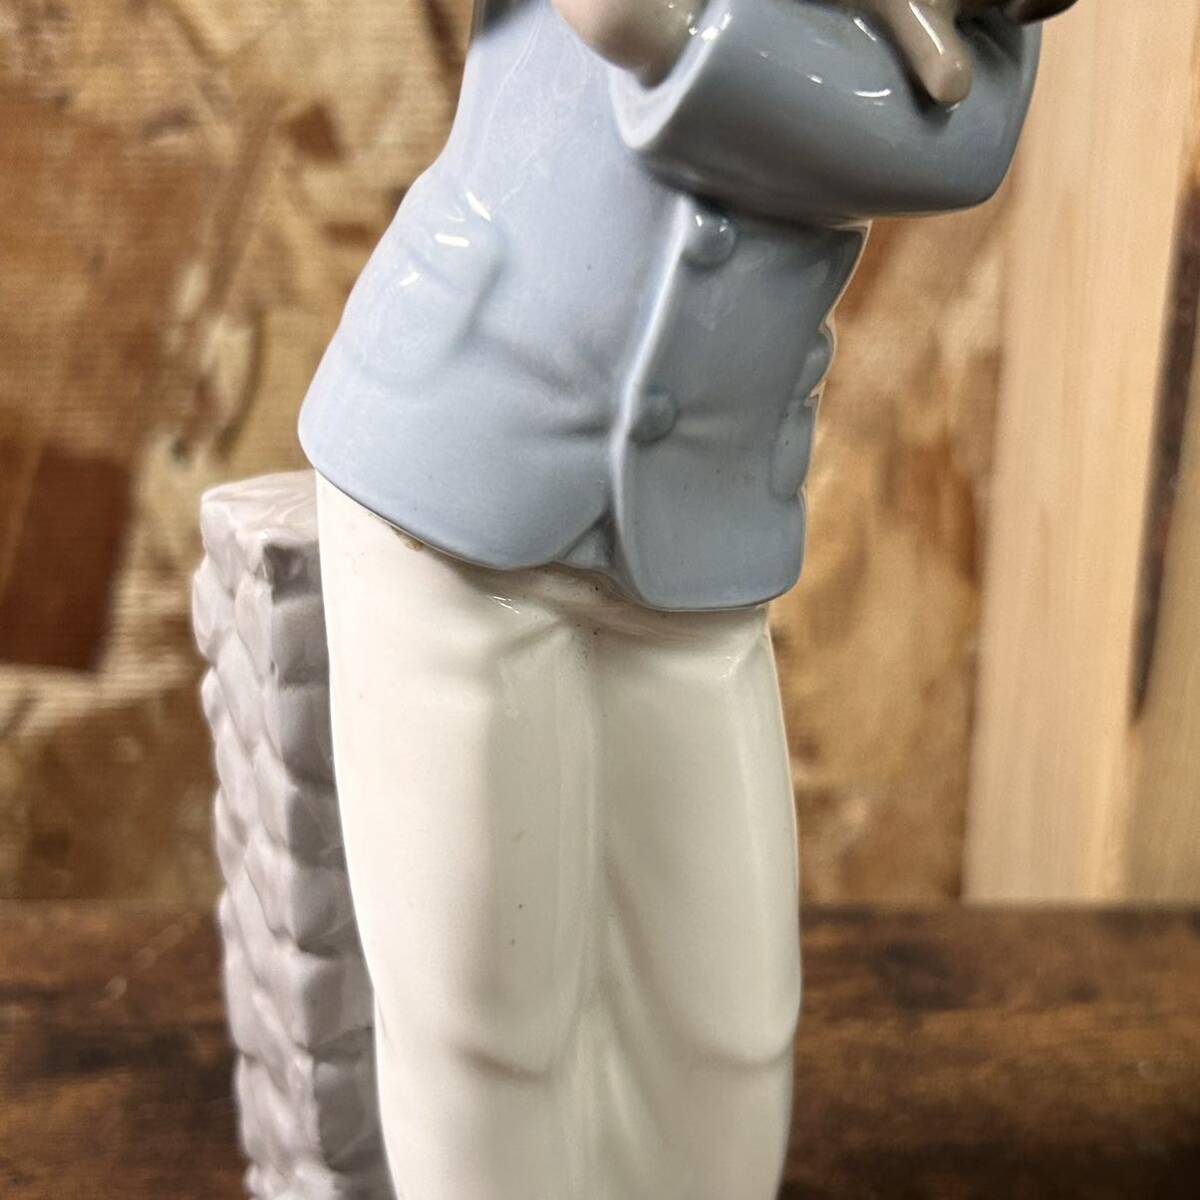 LLADRO Lladro мужчина собака керамика кукла figyu Lynn керамика кукла украшение интерьер античный б/у товар 